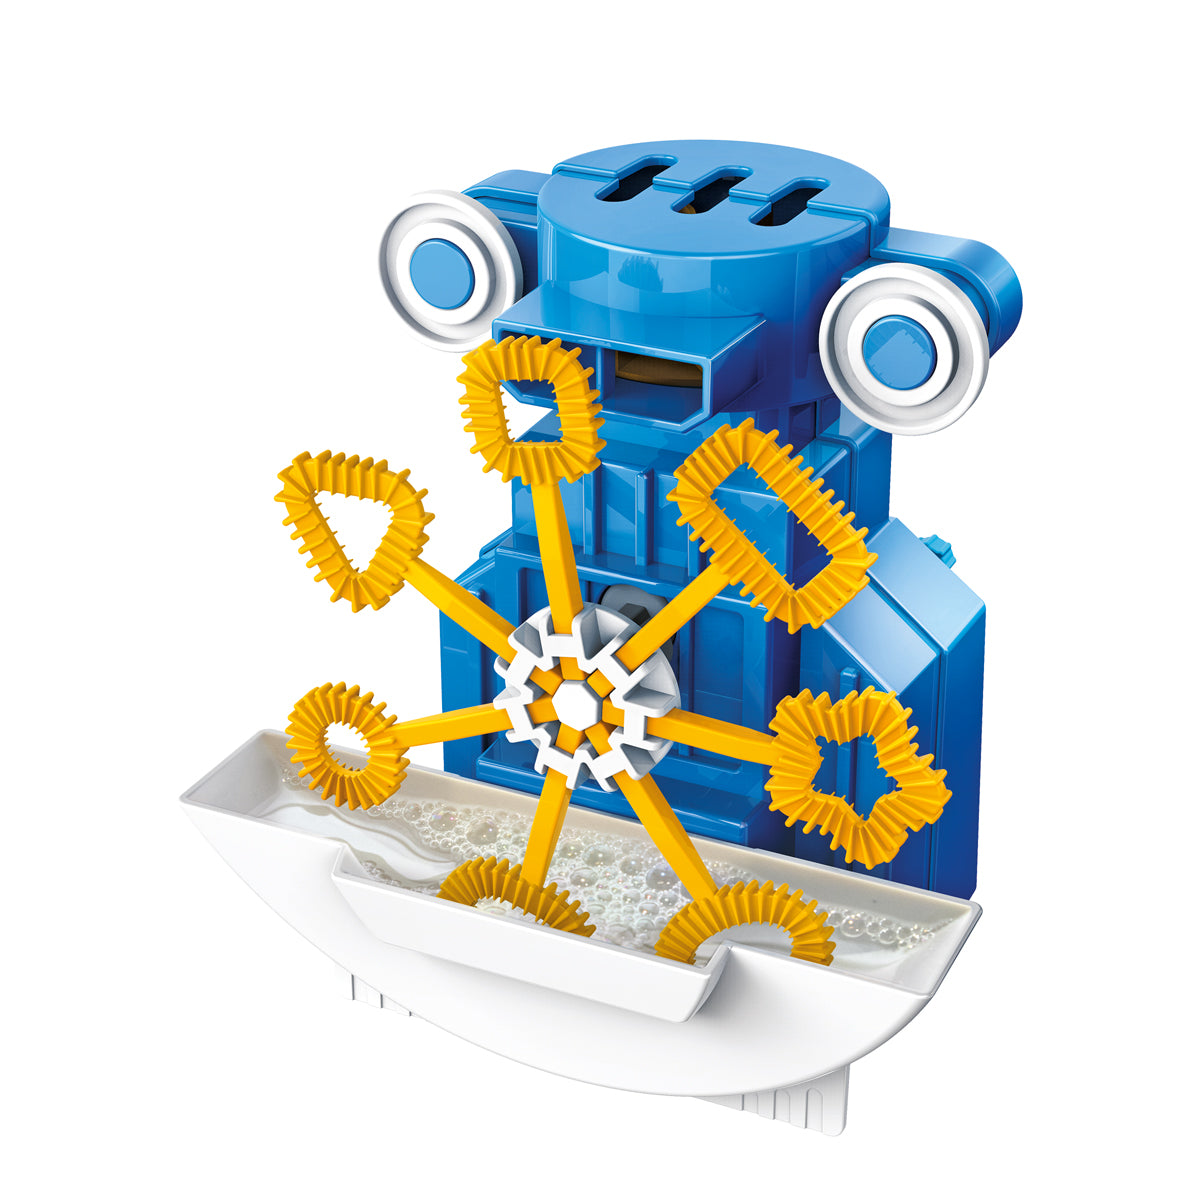 Kidzrobotix Robot Bellenblazer